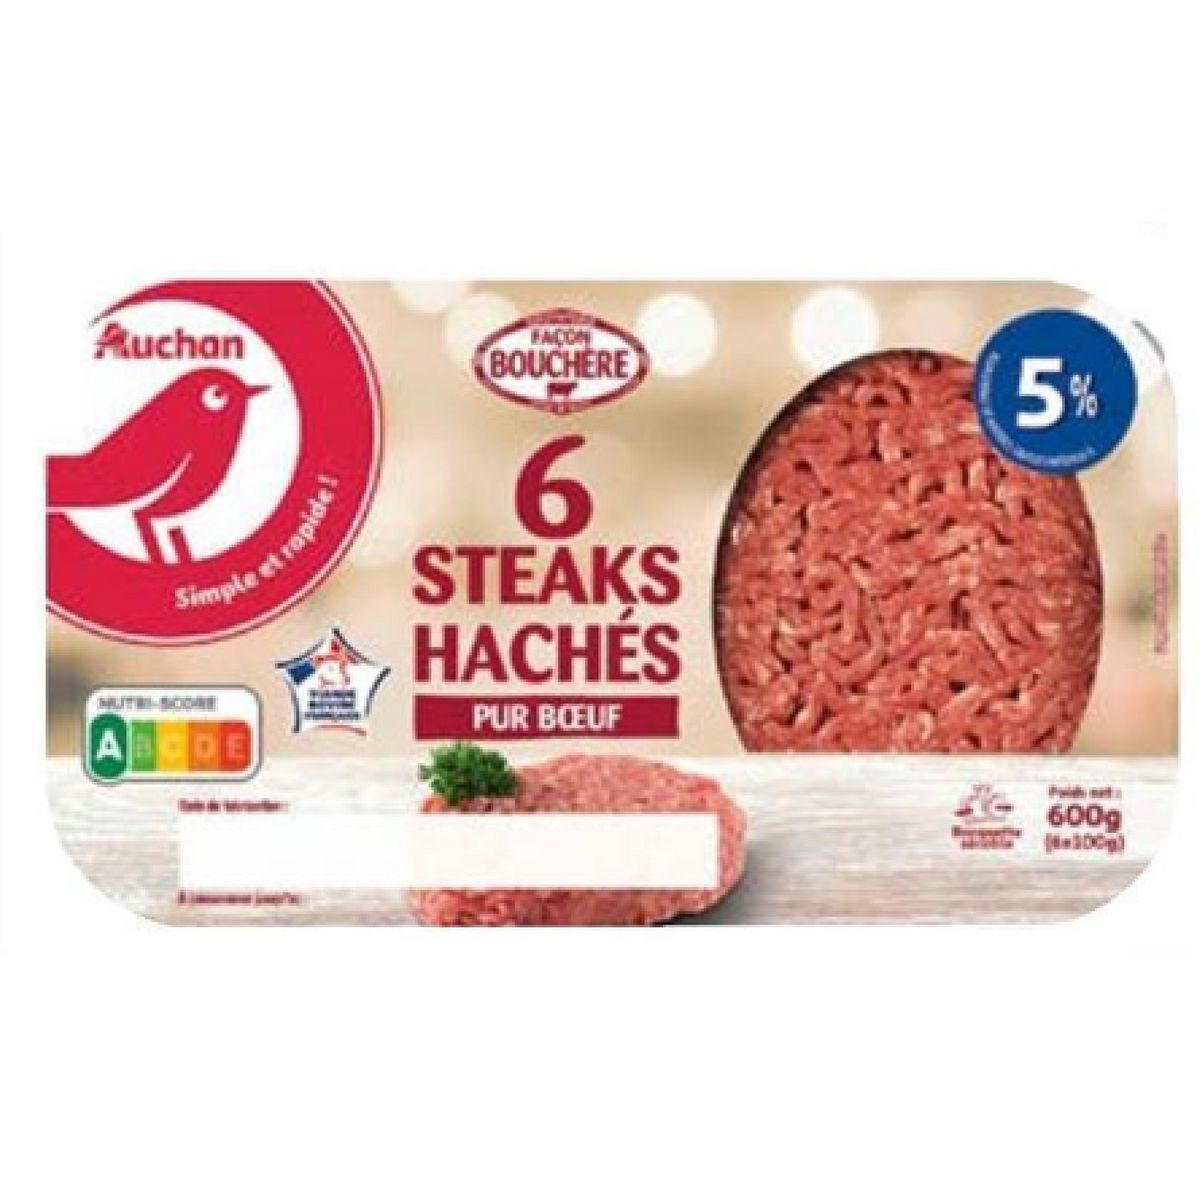 AUCHAN Steaks hachés pur bœuf façon bouchère 5%mg 6 pièces 600g